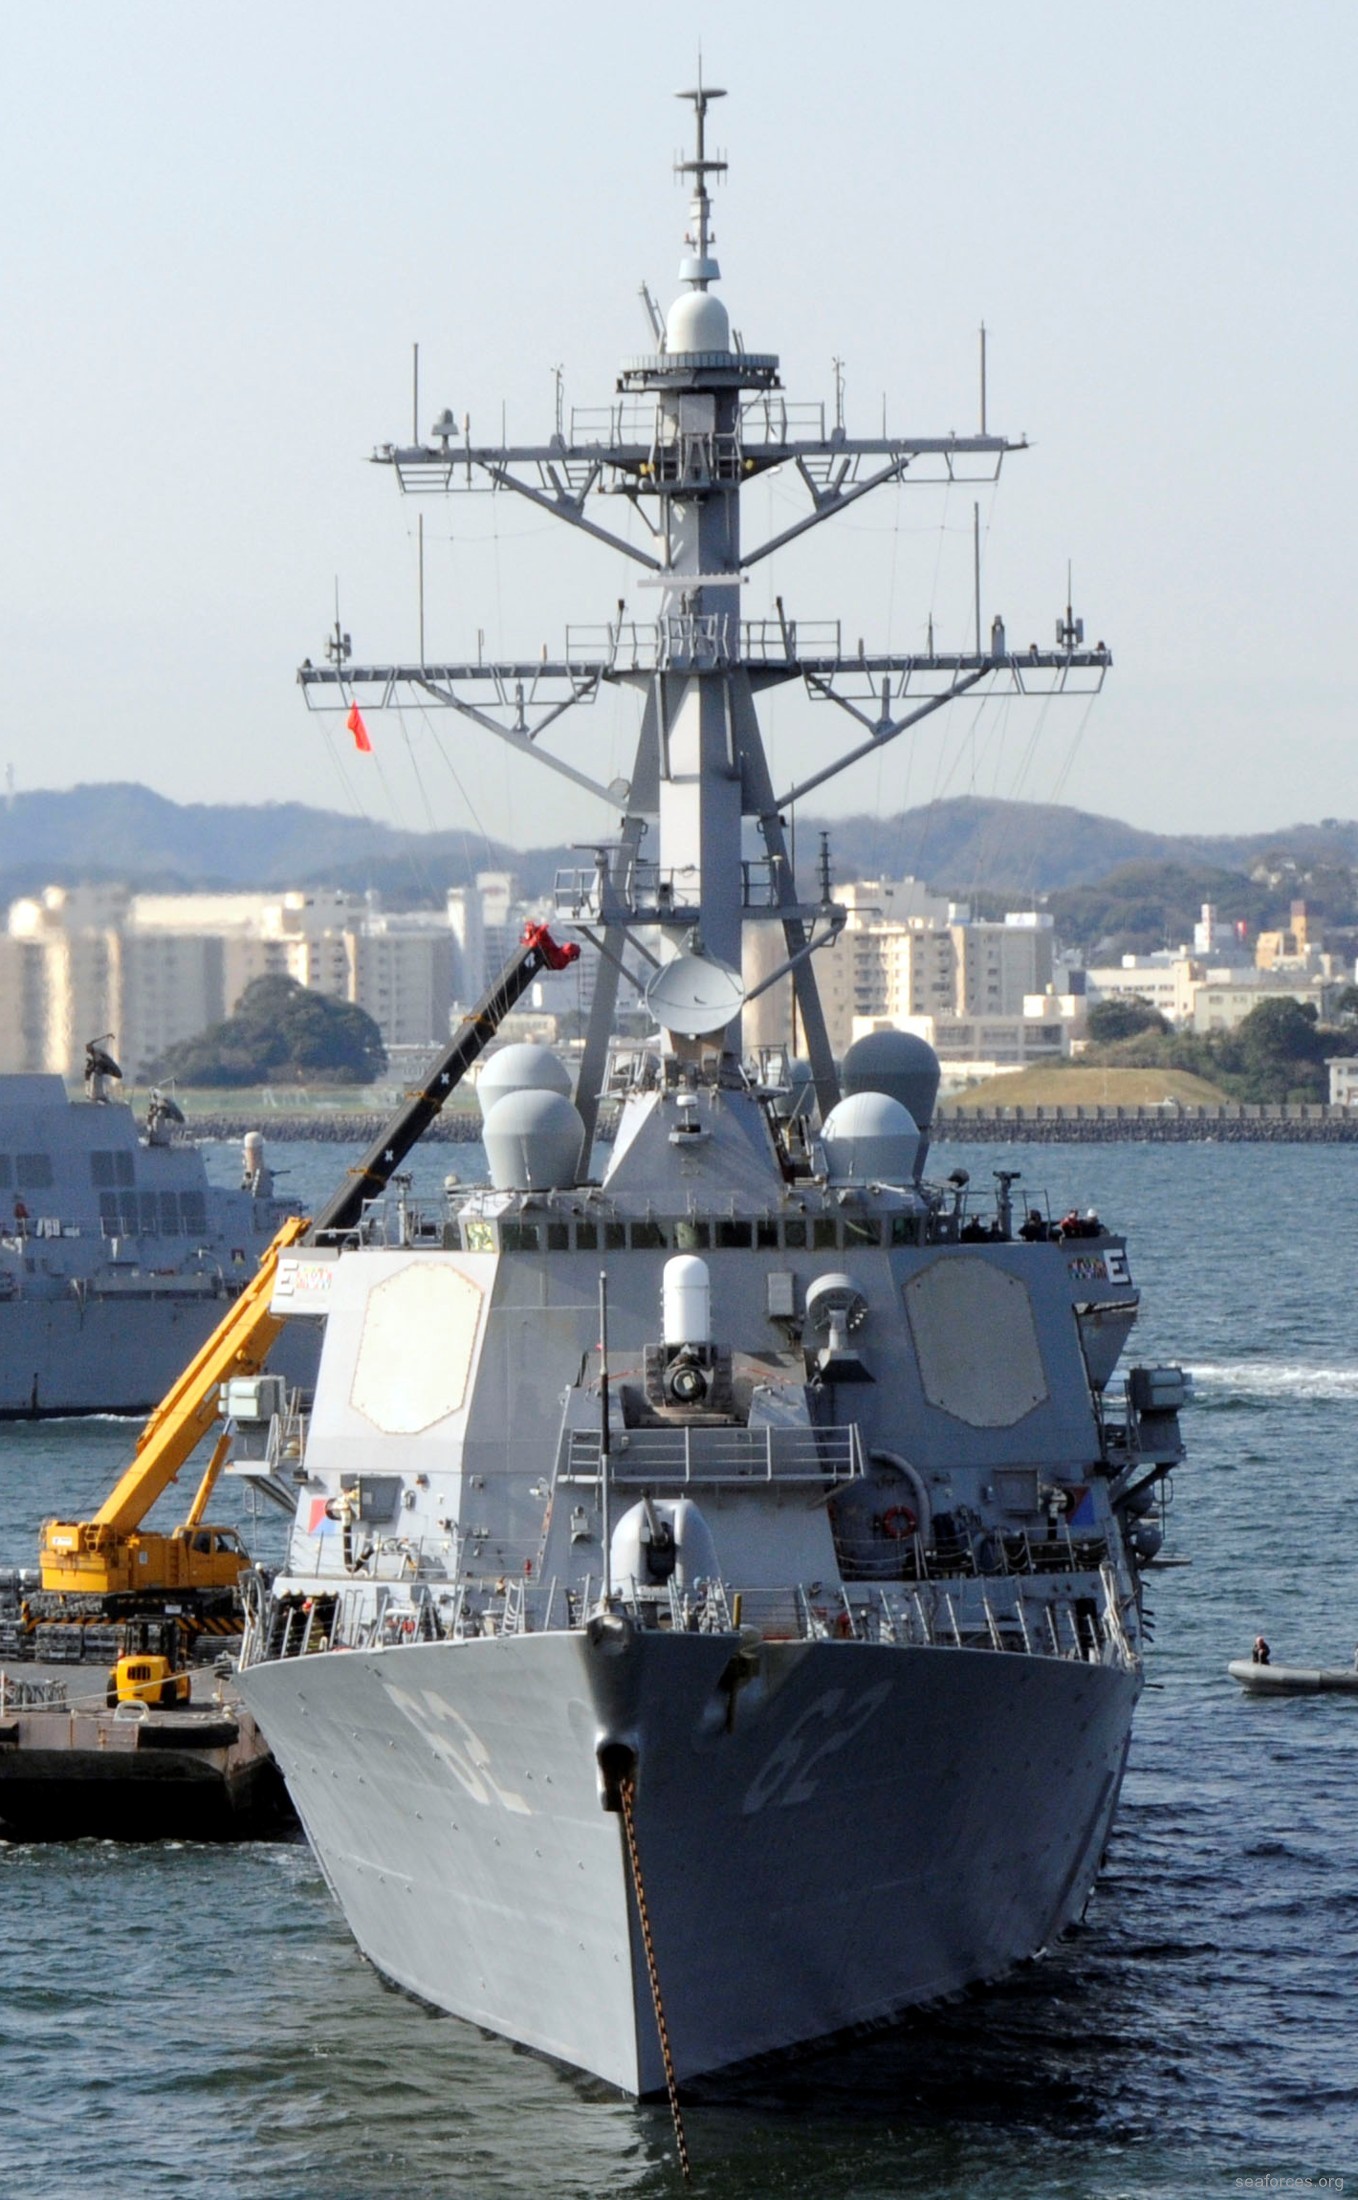 ddg-62 uss fitzgerald guided missile destroyer 2012 59 yokosuka japan